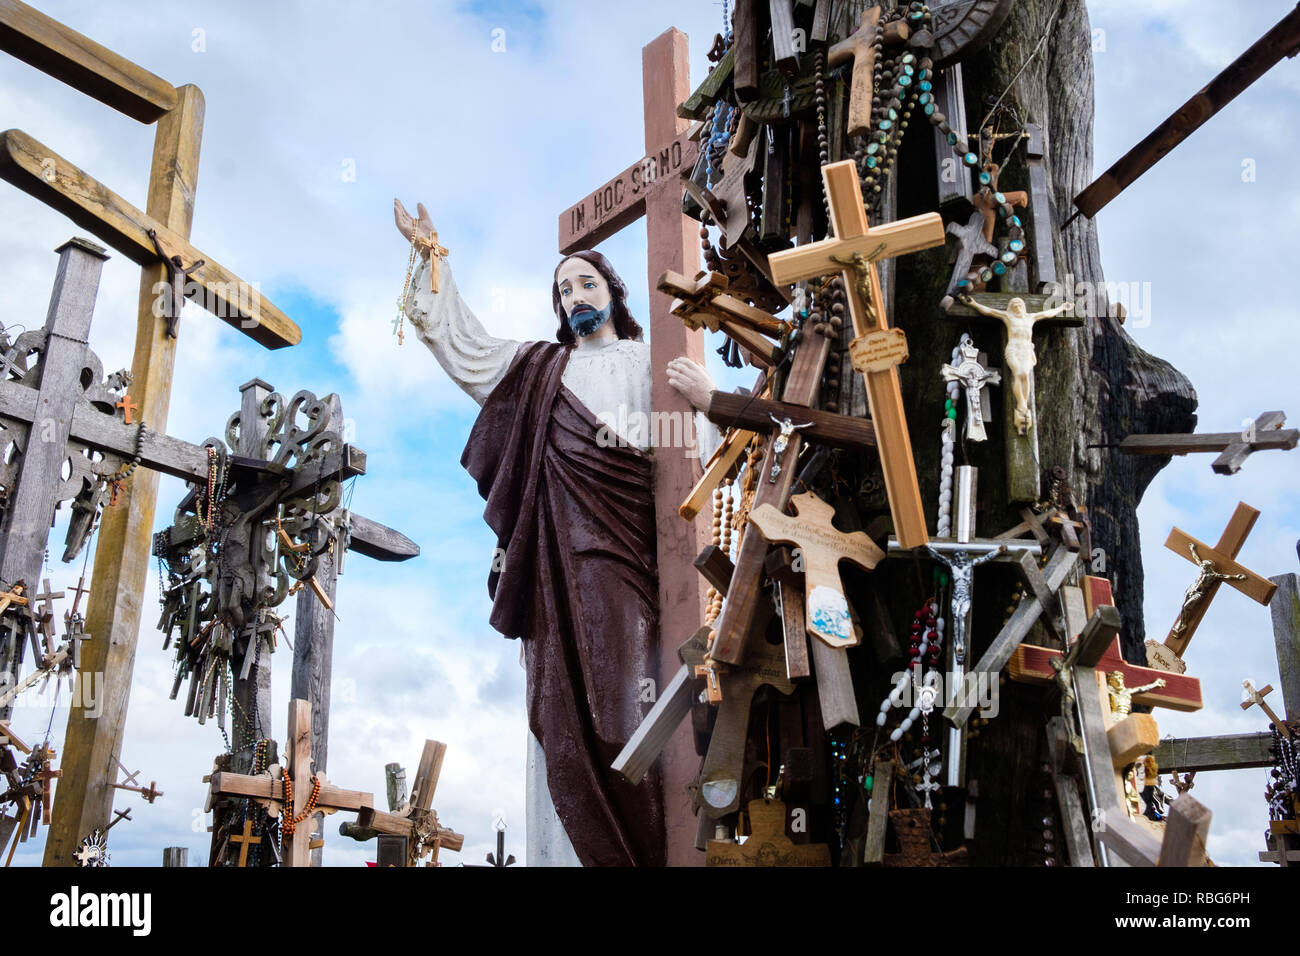 Litauen, Siauliai: der Berg der Kreuze. Der Berg der Kreuze, ein Wallfahrtsort, das Symbol des Litauischen Widerstand gegen fremde Eindringlinge, mit über 100.000 Stockfoto